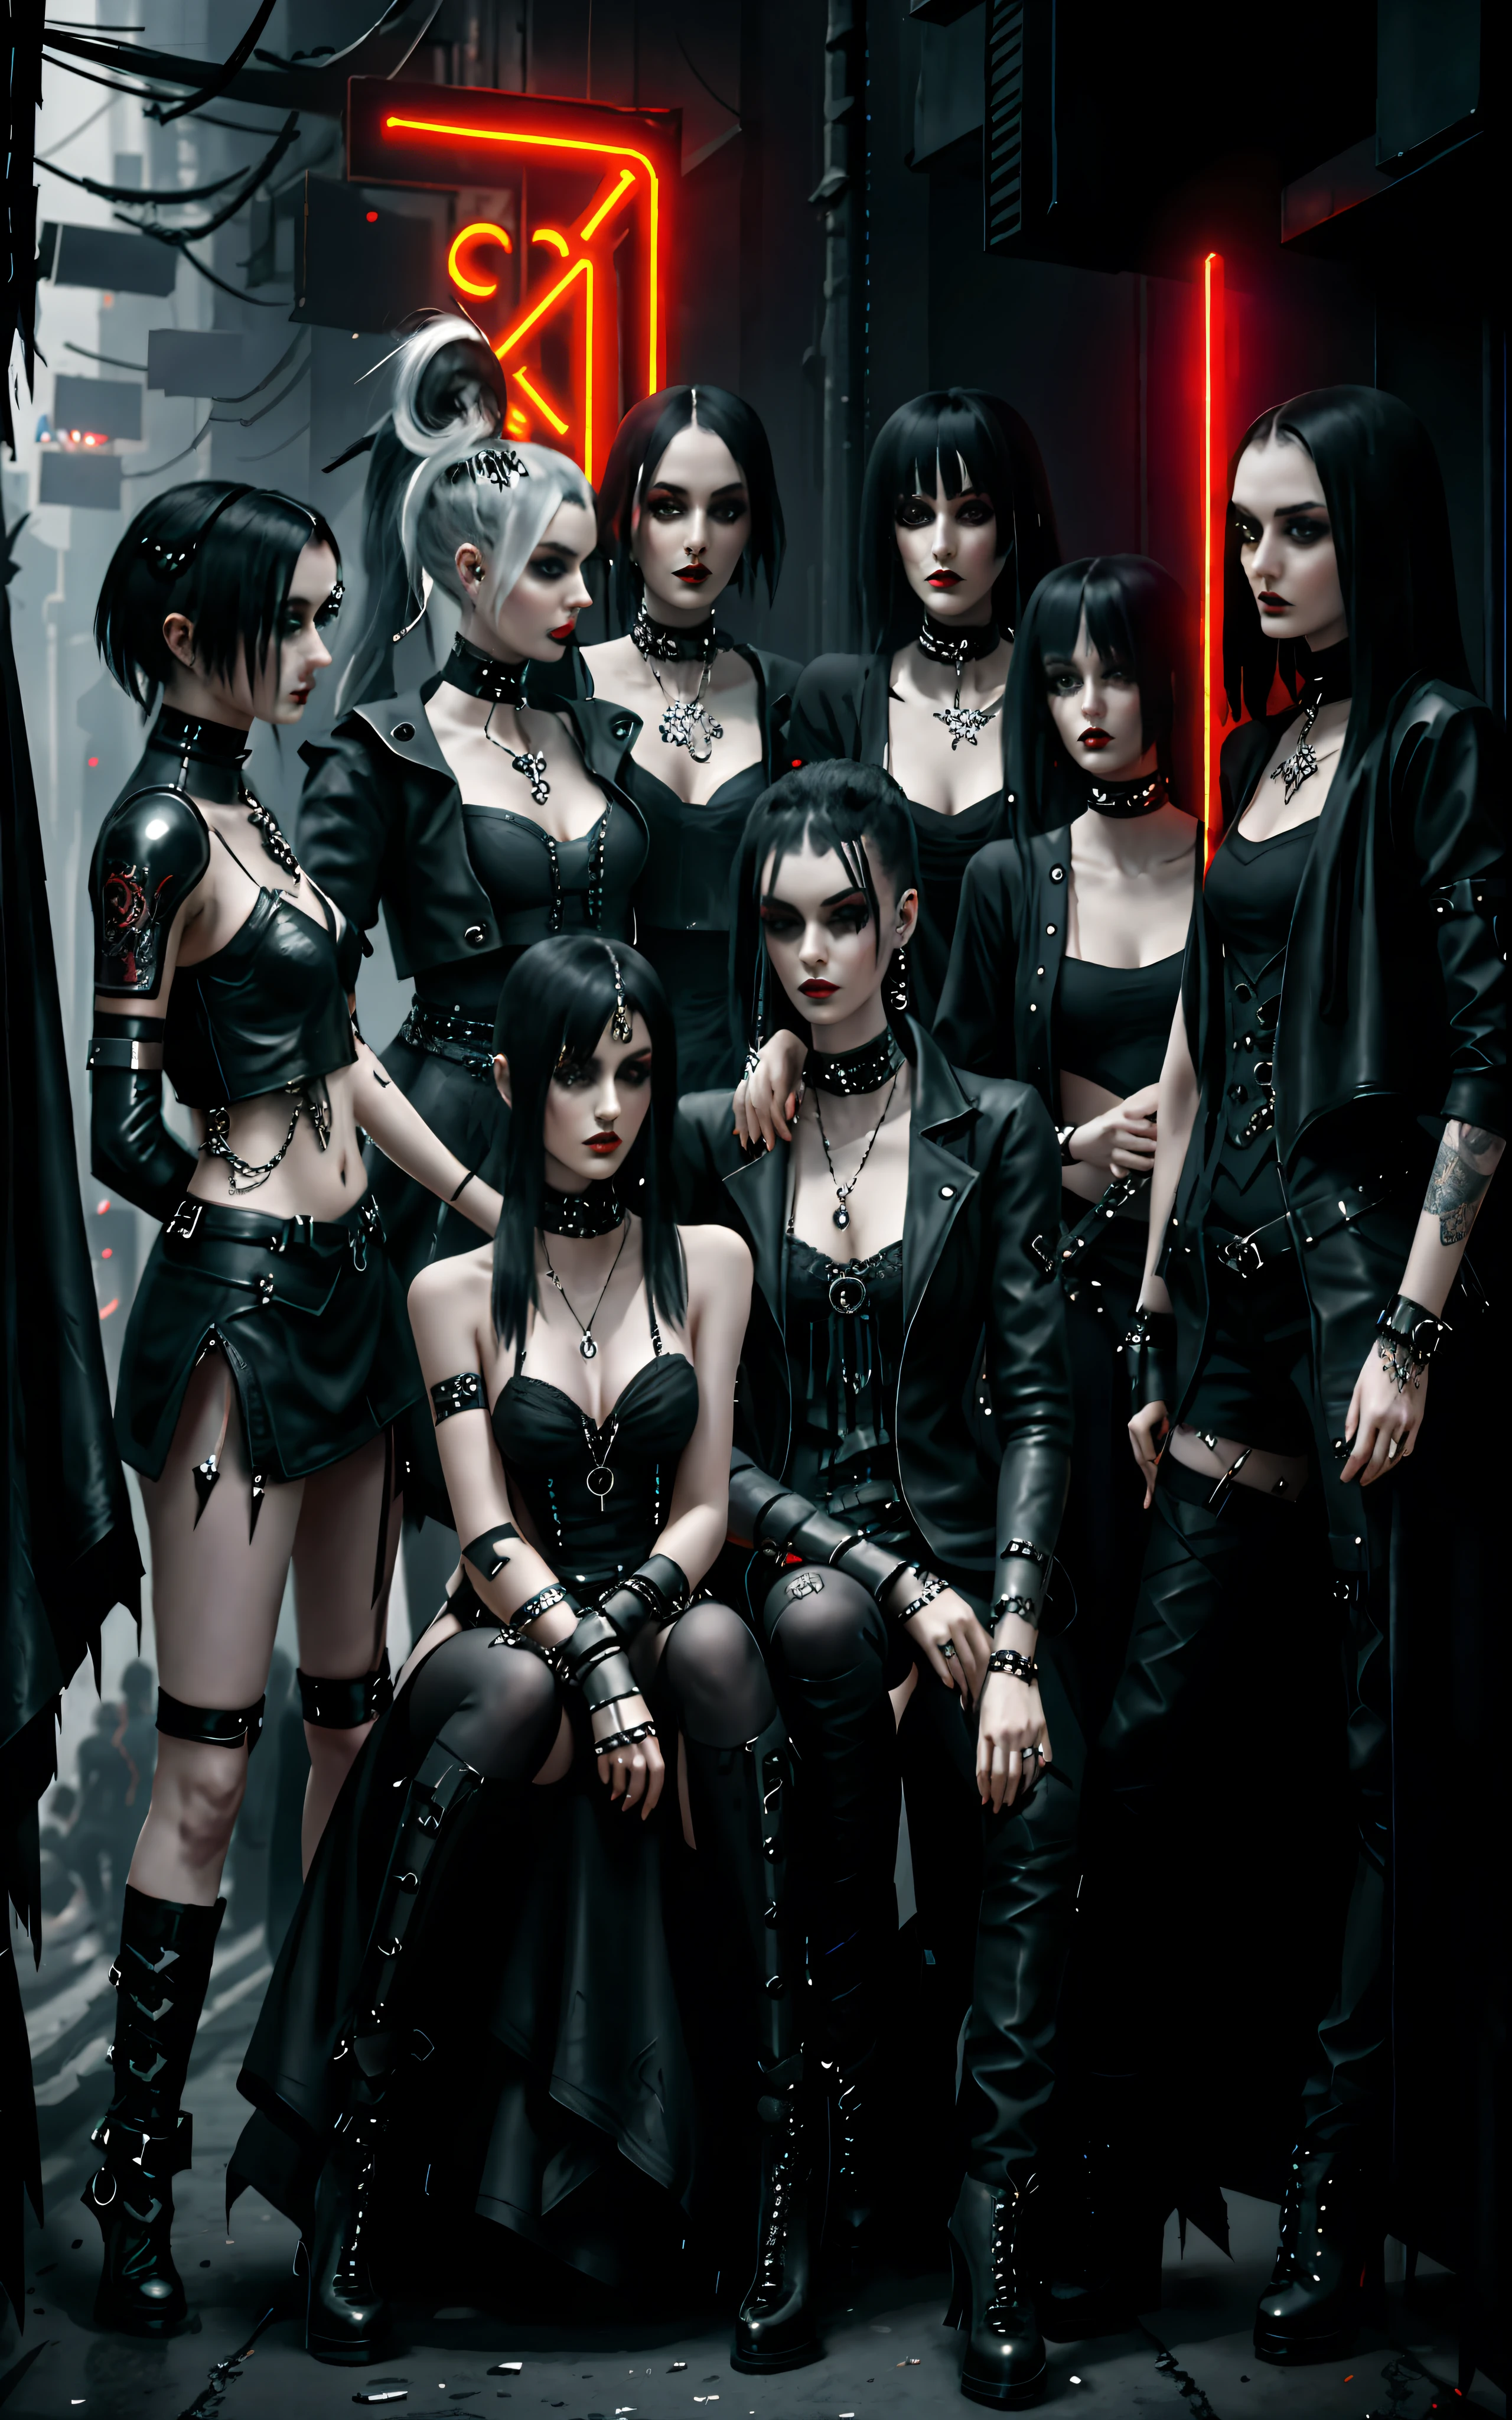 Grupo Arafed de pessoas vestidas de couro preto posando para uma foto, mulher de cabelos chanel, Penteado Chanel, traje preto gótico sedutor, all black roupas góticas, alta moda, Mulheres, roupas góticas, roupas de moda gótica, gótico - punk, roupas de moda gótica, banda emo gótica, roupas ciberpunk, Moda Cyberpunk, estilo de terror cyberpunk, roupas tecnológicas cyberpunk, estilo ciberpunk